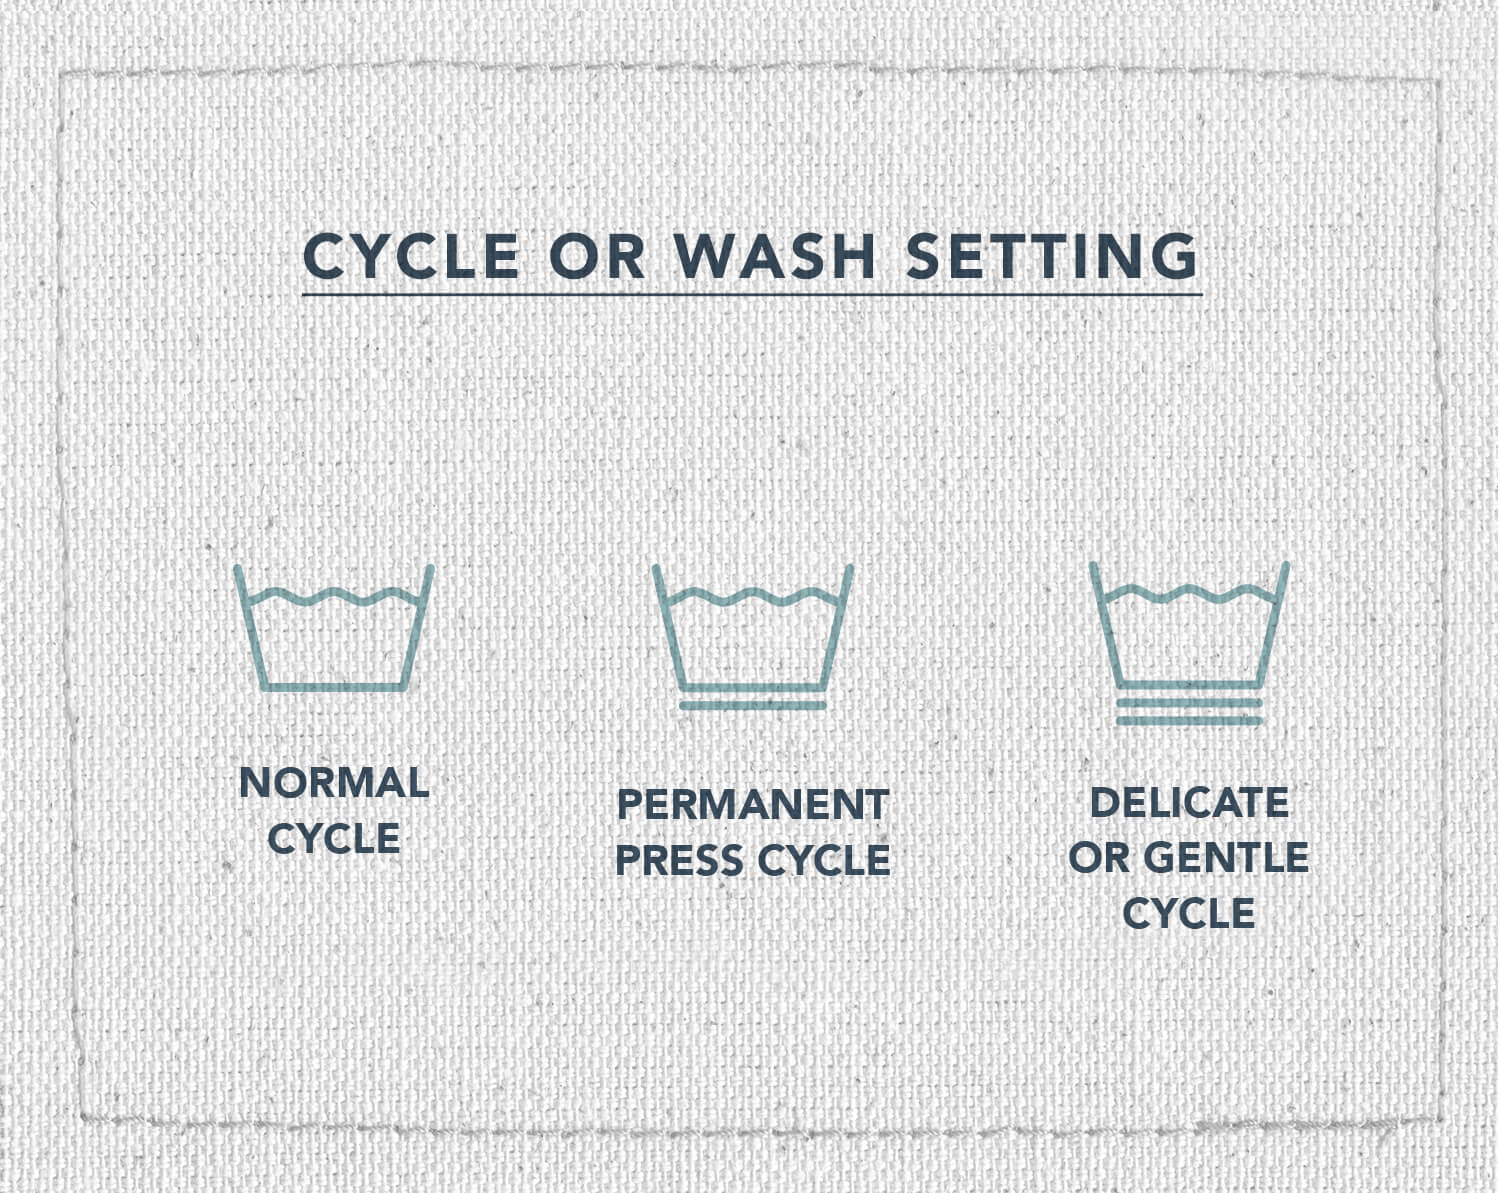 Une infographie de trois symboles d'entretien du tissu, indiquant quel cycle de lavage utiliser pour vos vêtements, cycle normal, cycle de presse permanent ou cycle délicat ou doux